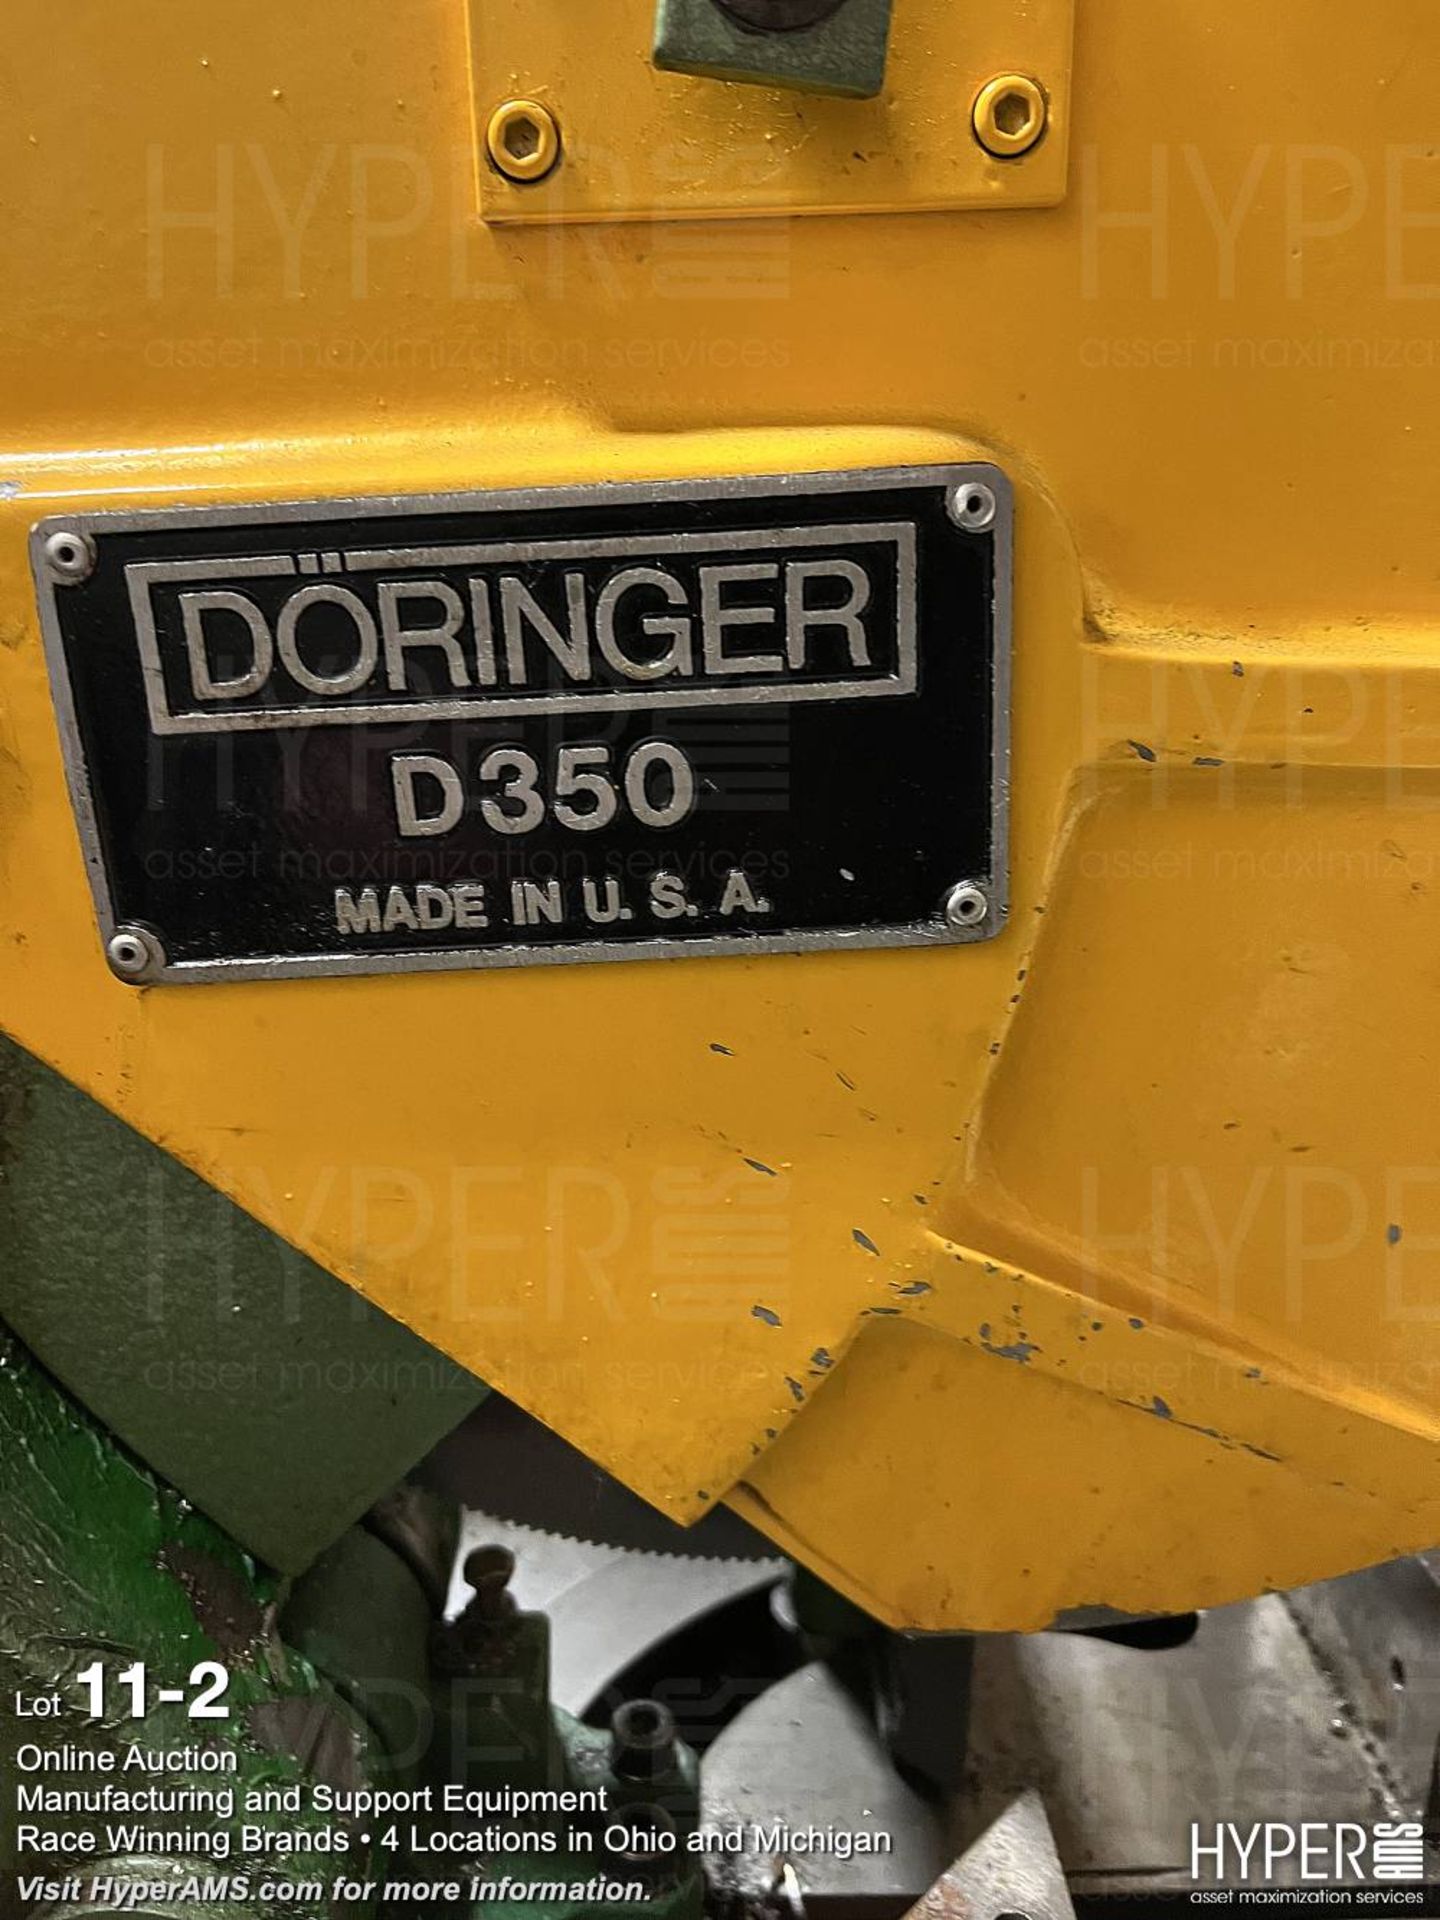 Doringer D350 Cold Saw - Image 2 of 9